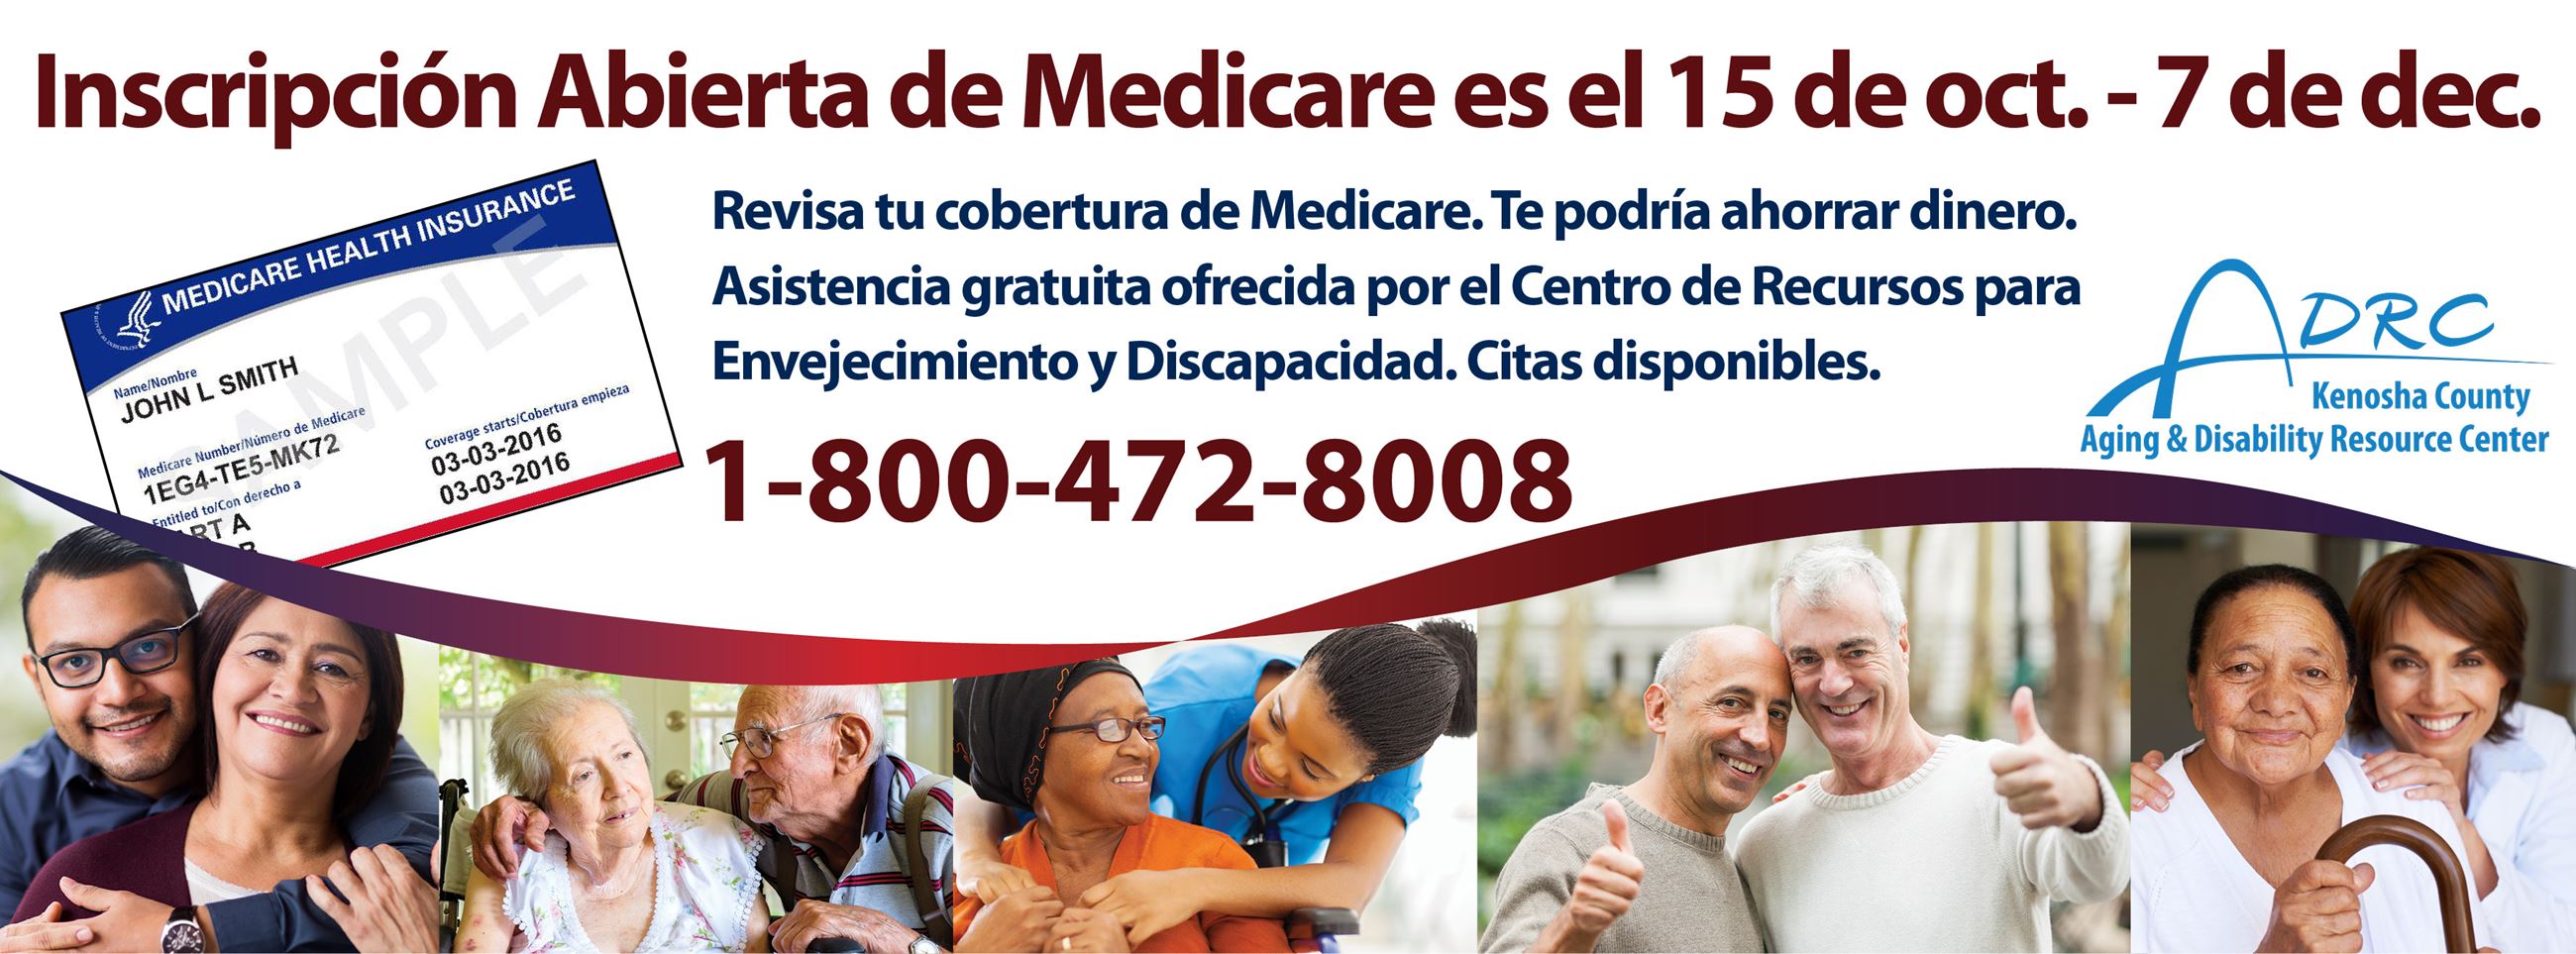 Inscripcion abierta de Medicare es el 15 de octubre a el 7 de diciembre. Llama al 1-800-472-8008.